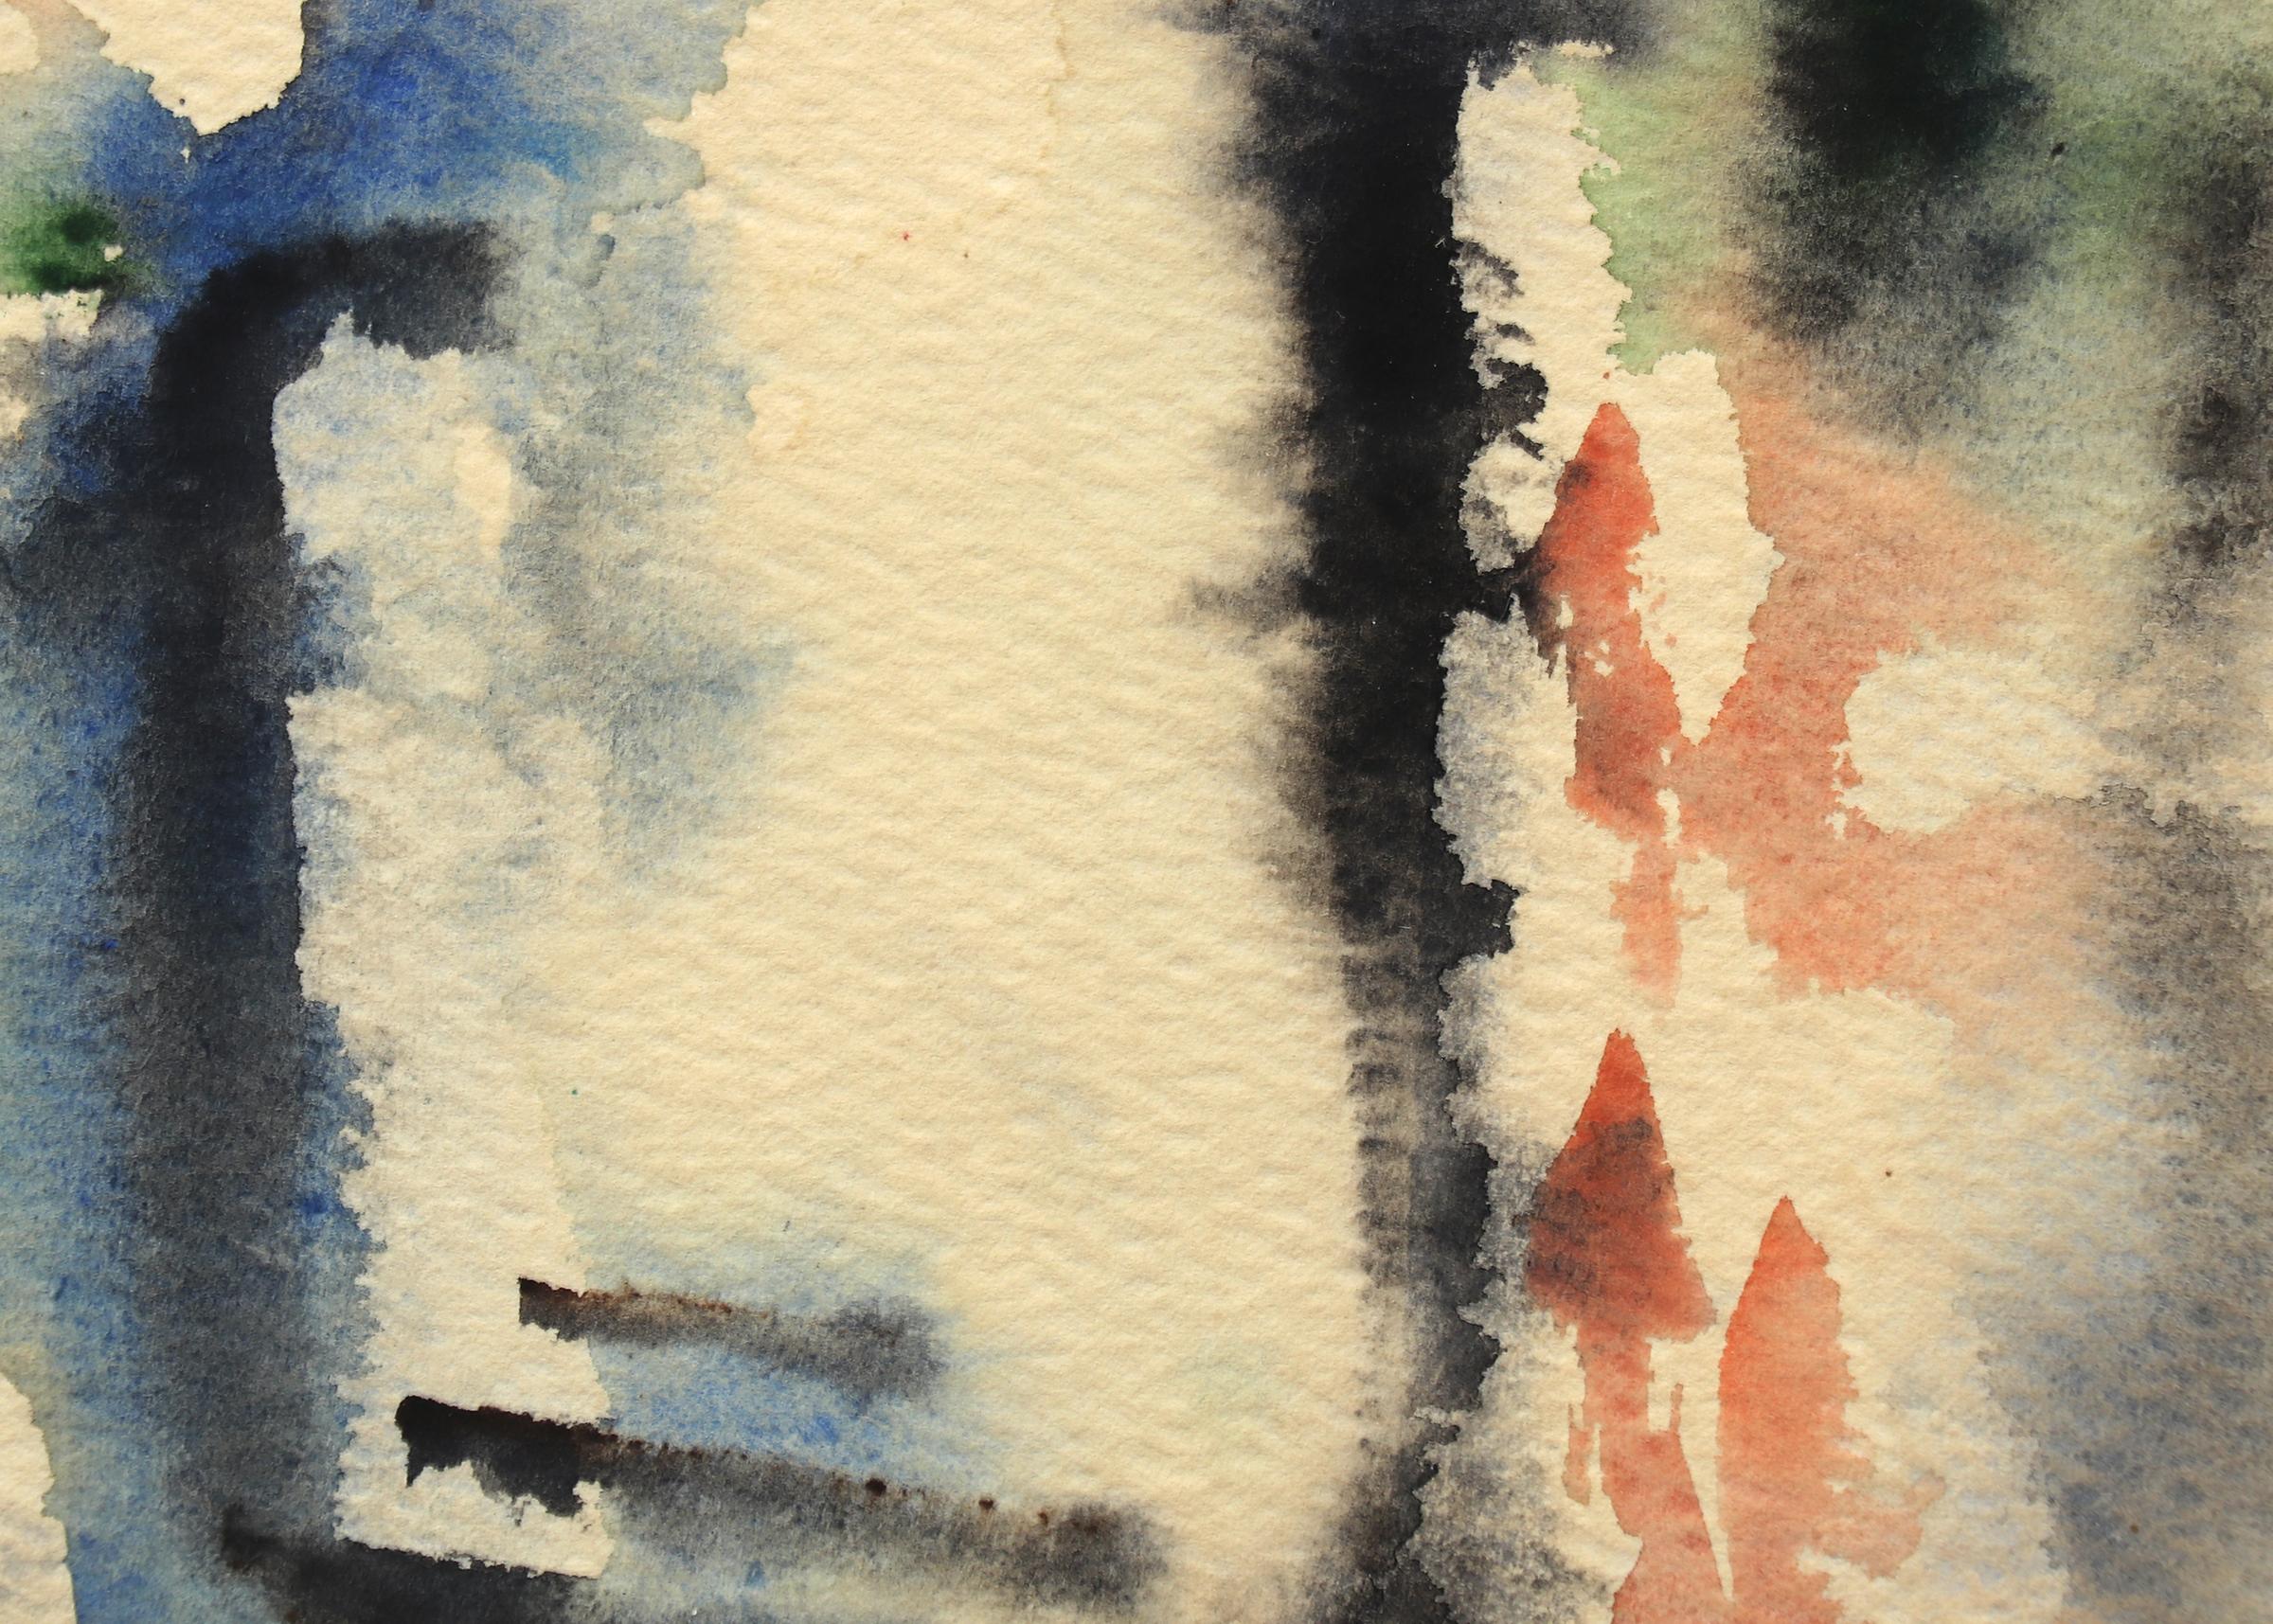 Peinture expressionniste abstraite à l'aquarelle de bleu, noir, orange et vert signée par Charles Ragland Bunnell (1897-1968). Présenté dans un cadre personnalisé avec tous les matériaux d'archivage et un verre anti-UV, les dimensions extérieures